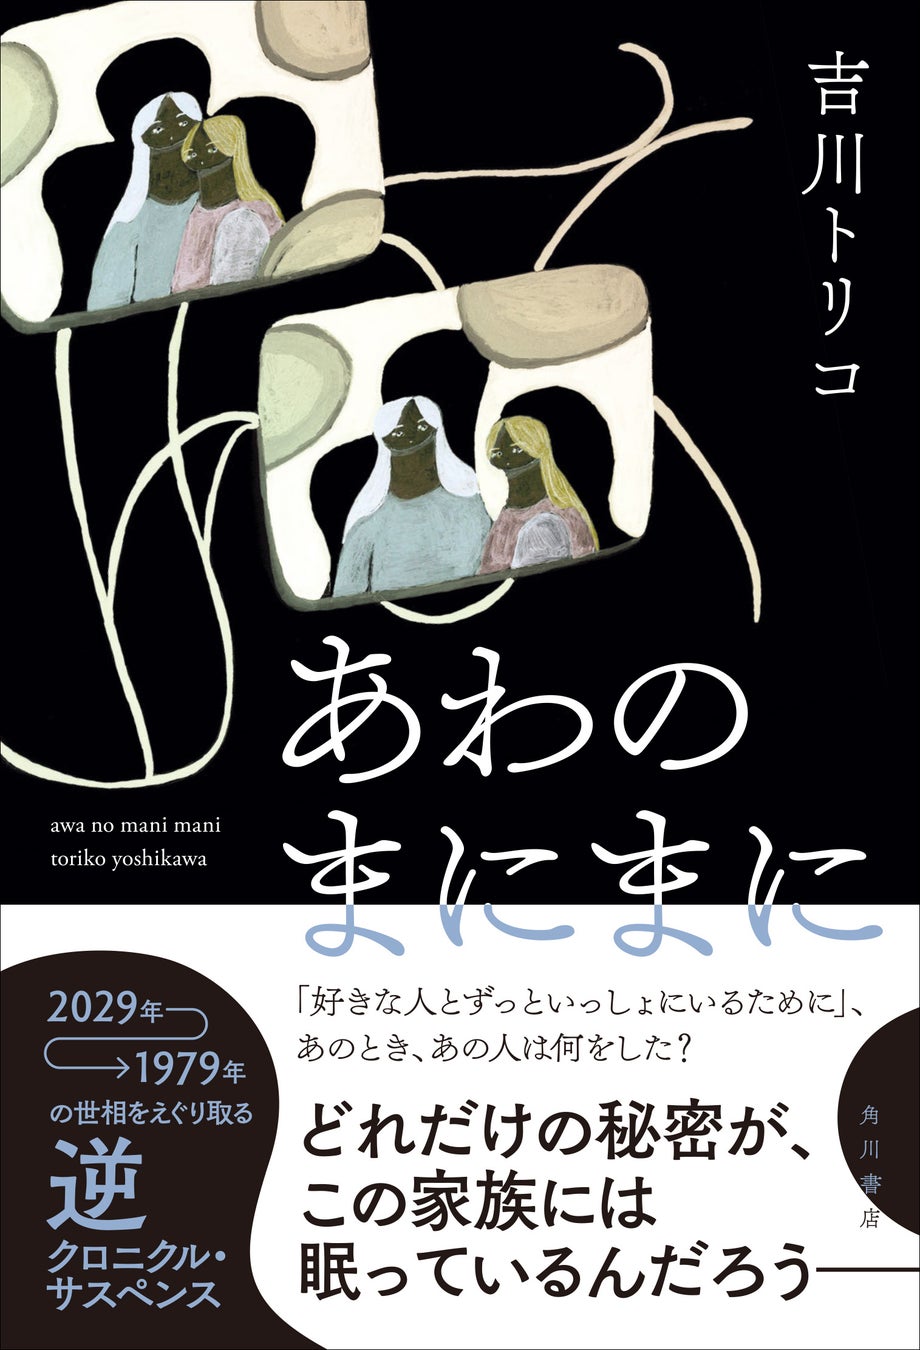 吉川トリコ『あわのまにまに』が「第５回ほんタメ文学賞」あかりん部門大賞を受賞！